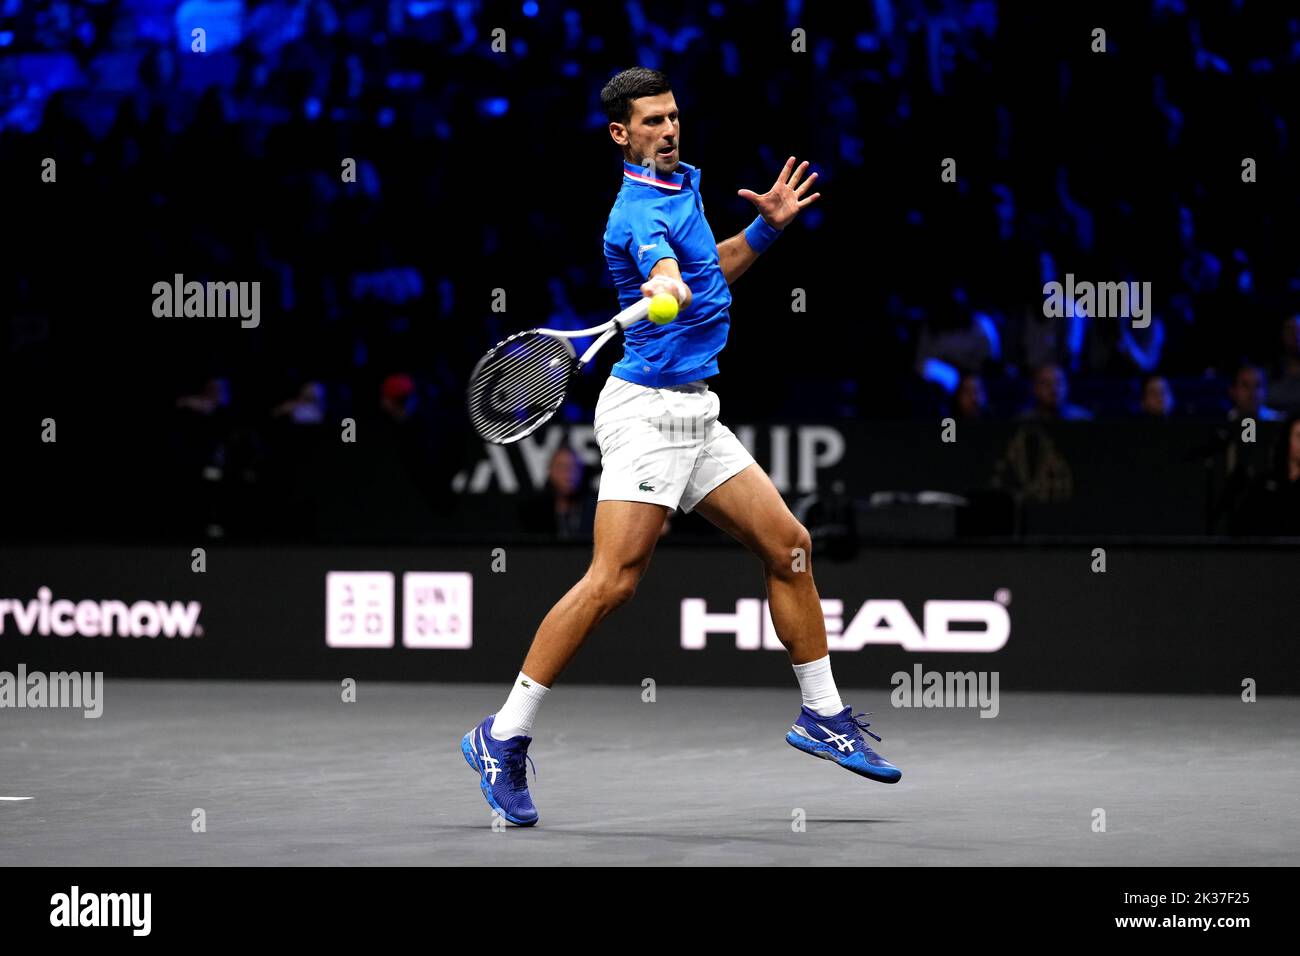 Novak Djokovic en action contre Felix Auger Aliassime dans le match des célibataires le troisième jour de la coupe de Laver à la O2 Arena, Londres. Date de la photo: Dimanche 25 septembre 2022. Banque D'Images